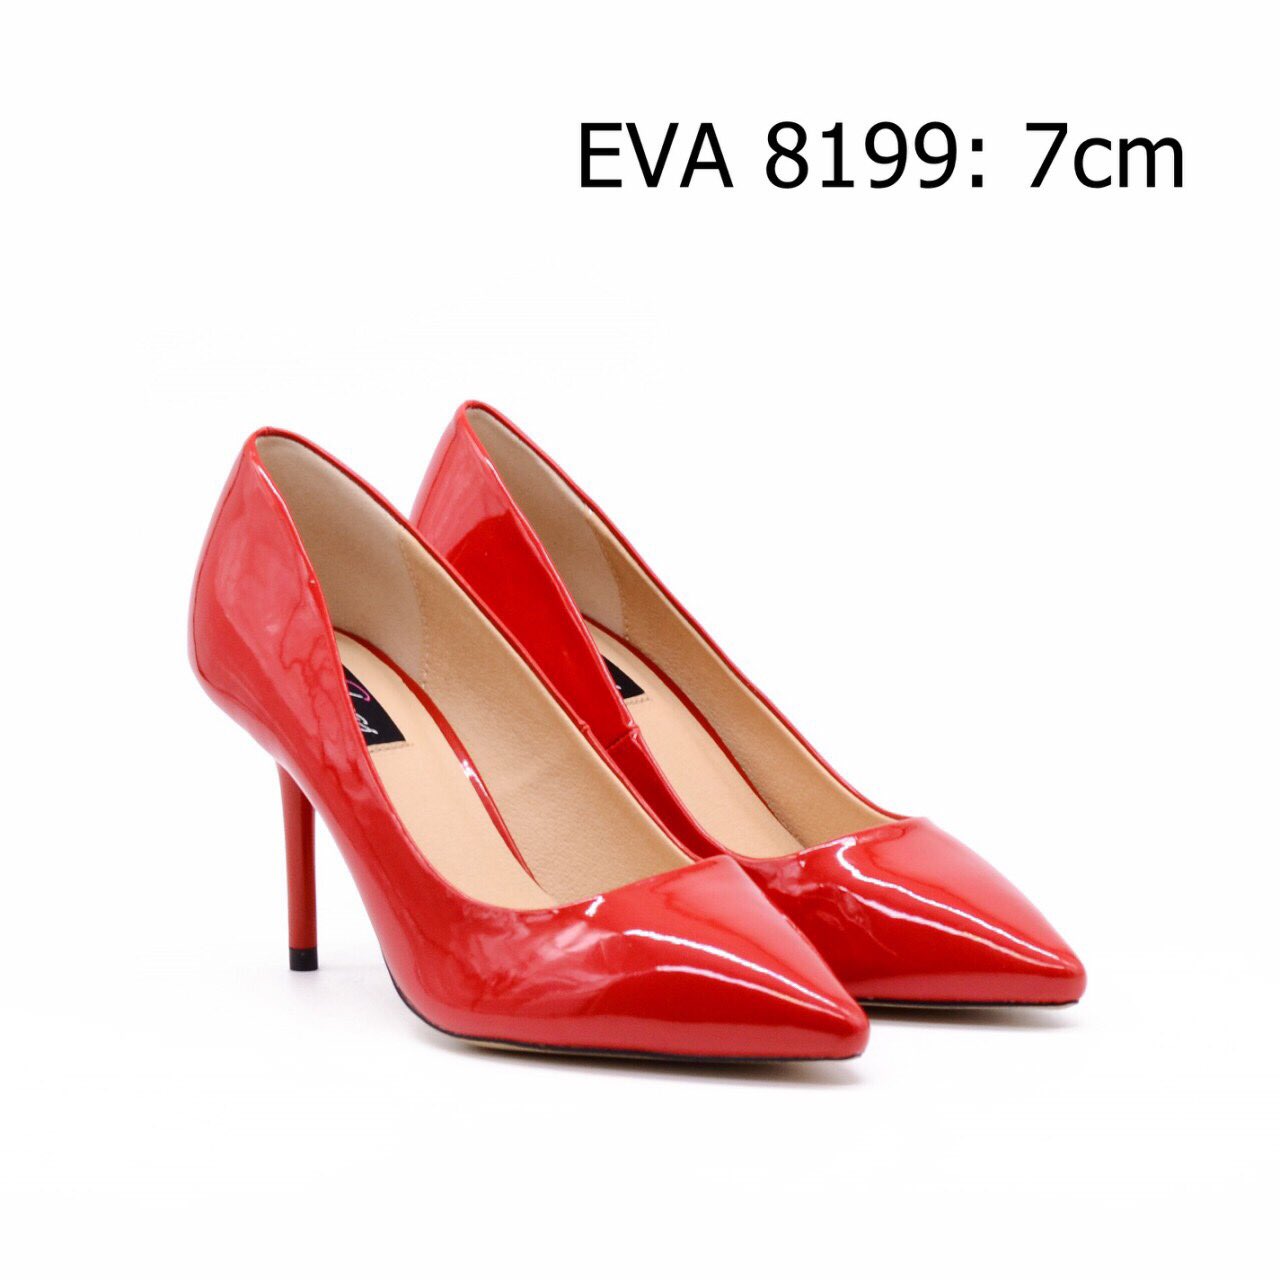 Giày mũi nhọn  EVA8199 thiết kế gót đũa thanh thoát, tôn dáng, da bóng trẻ trung, quyến rũ.